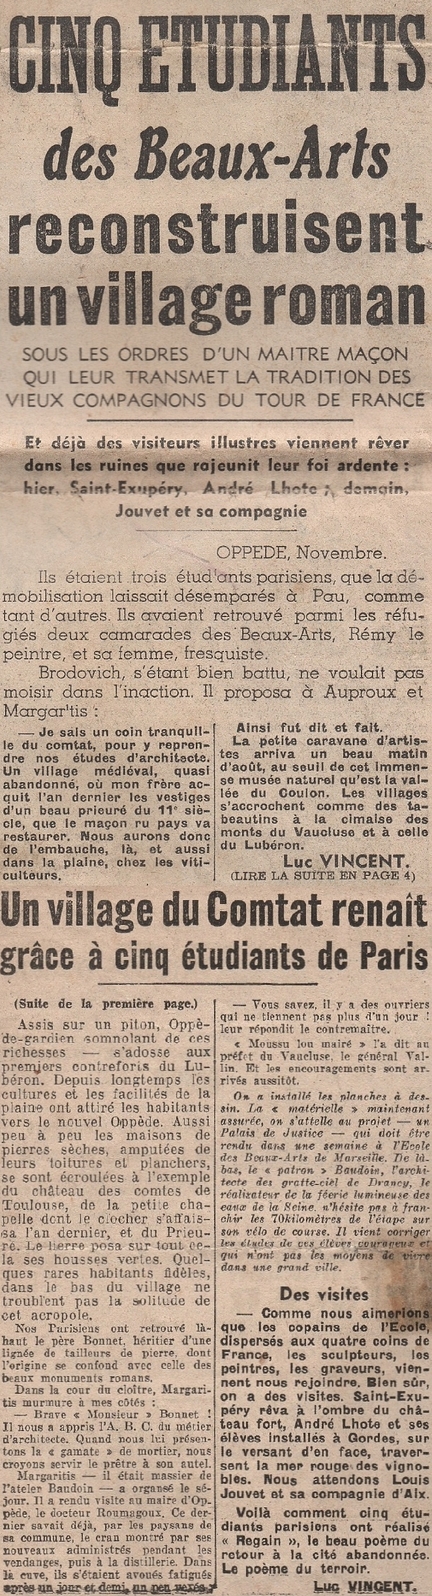 Cinq étudiants des Beaux-Arts reconstruisent un village roman - Paris-soir, 19 novembre 1940